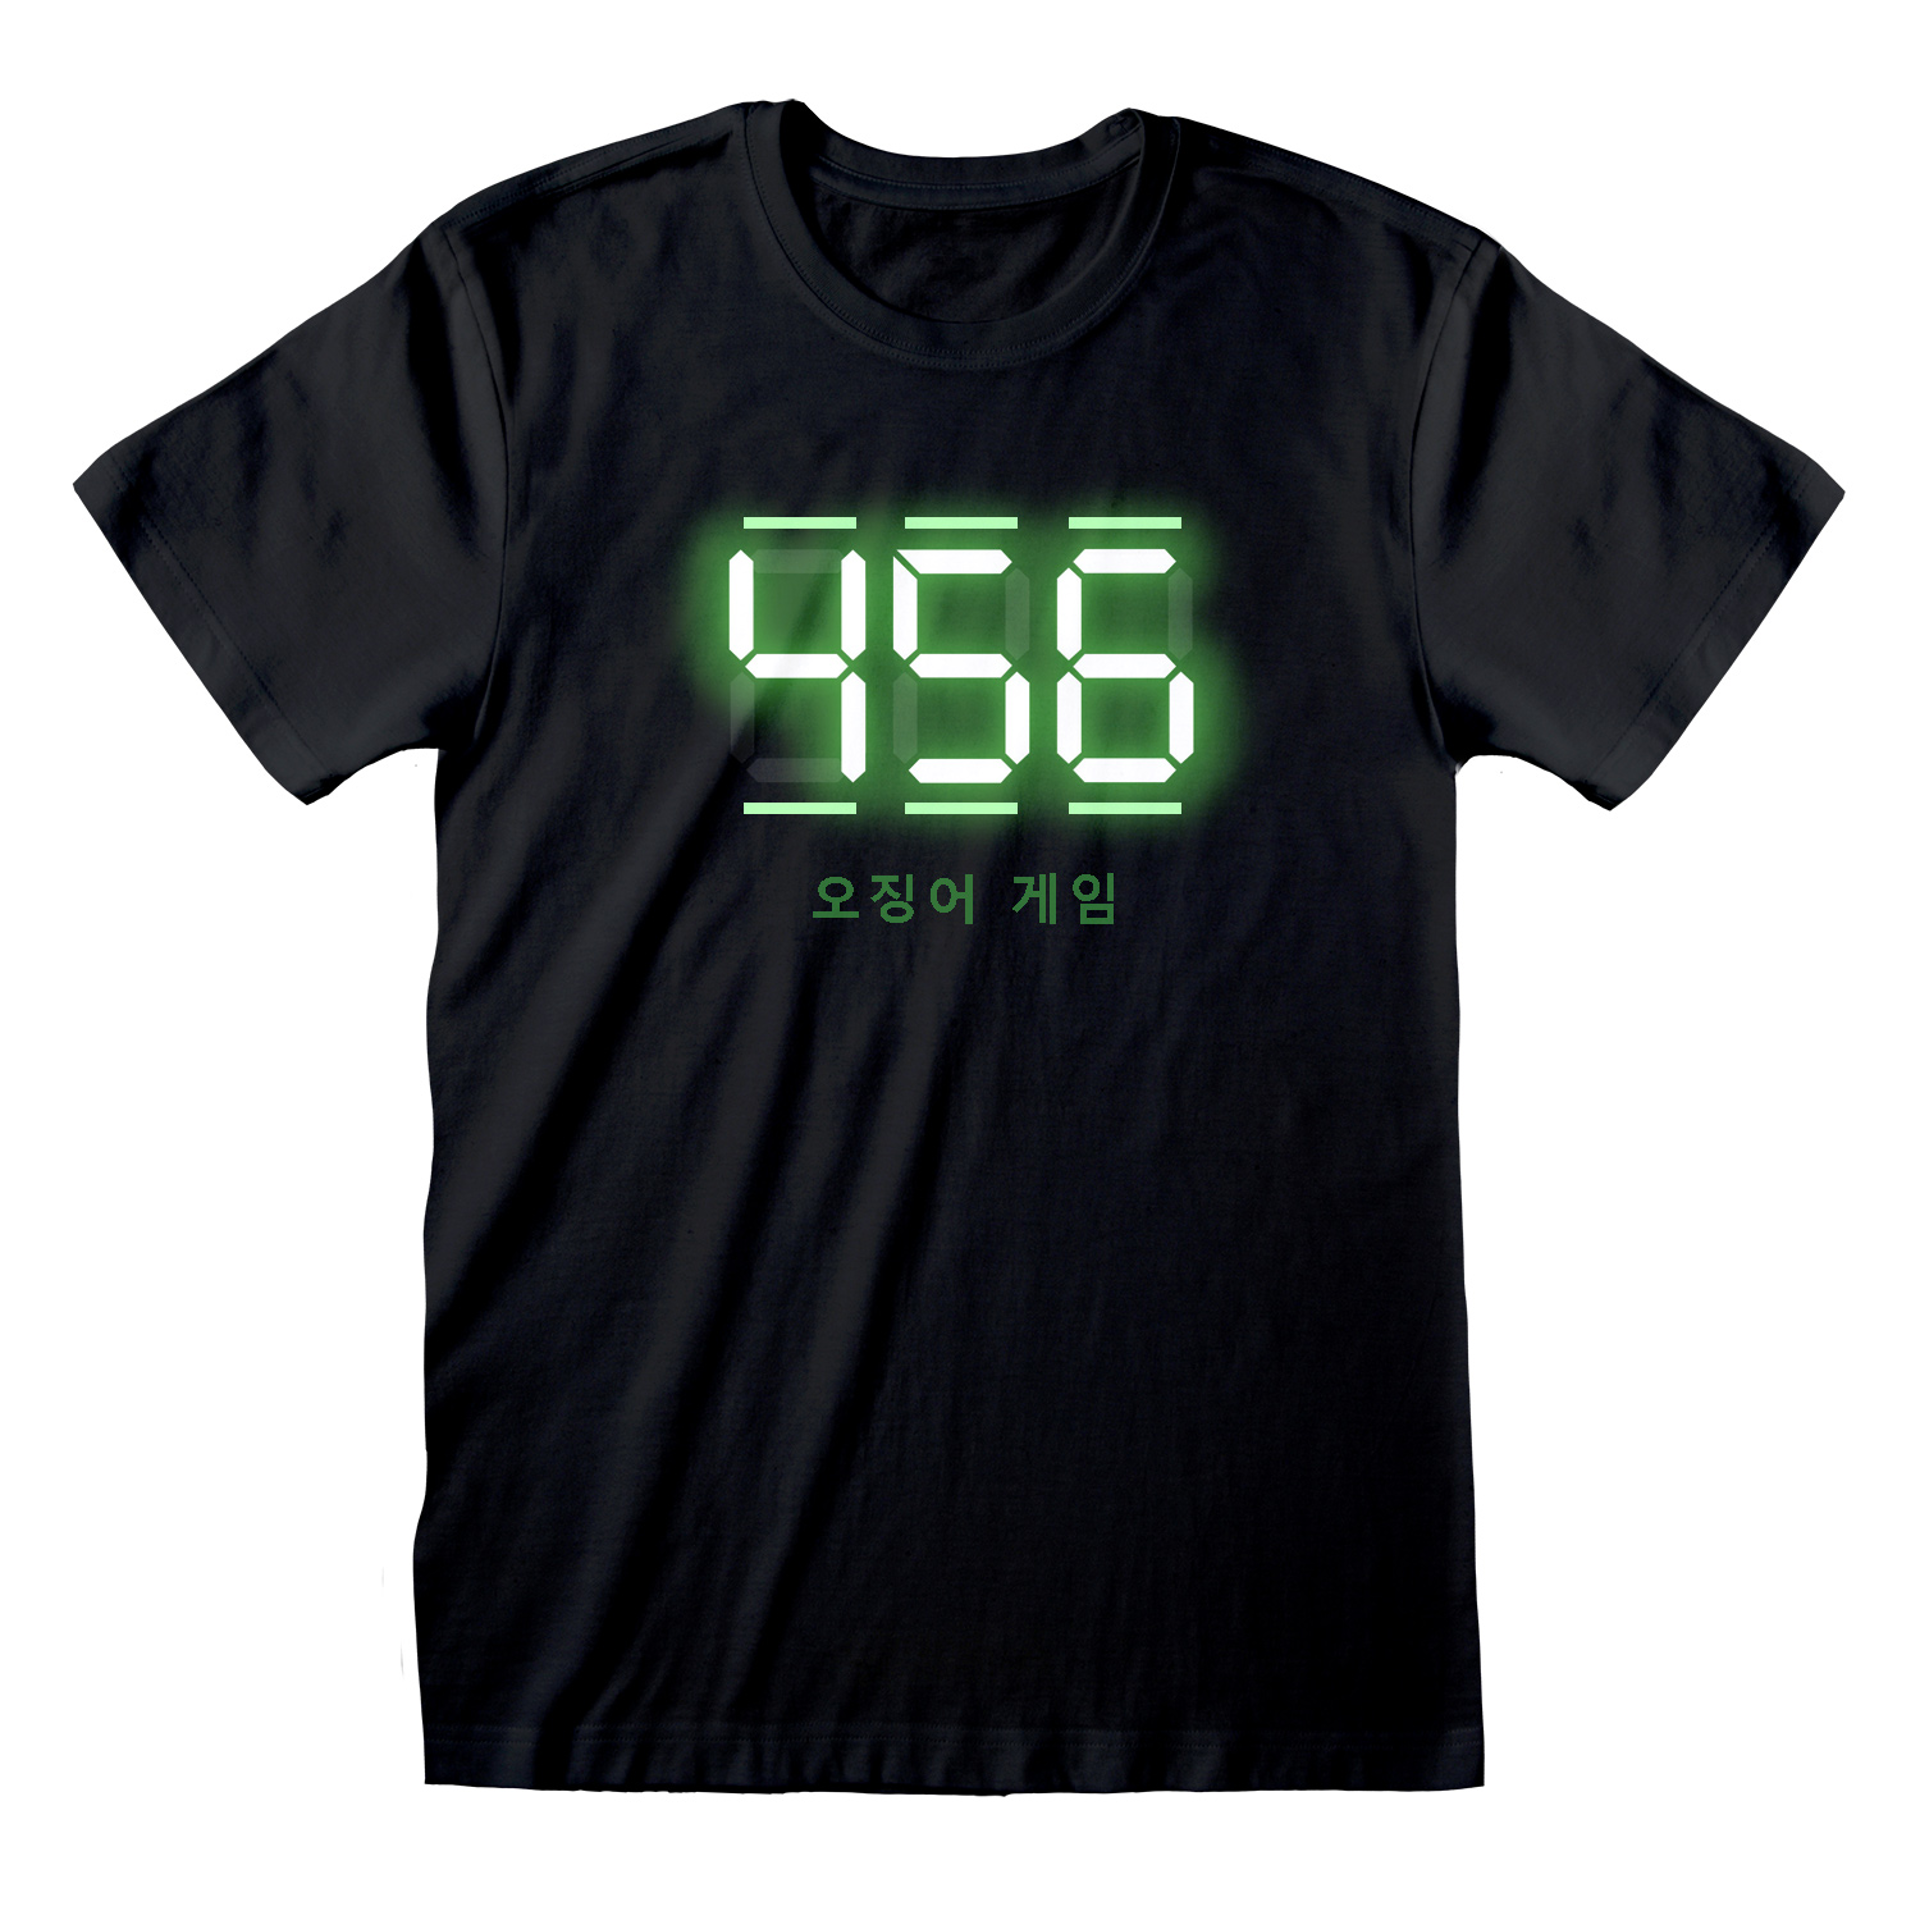 Squid Game - T-shirt unisexe Noir Texte numérique 456 - XL